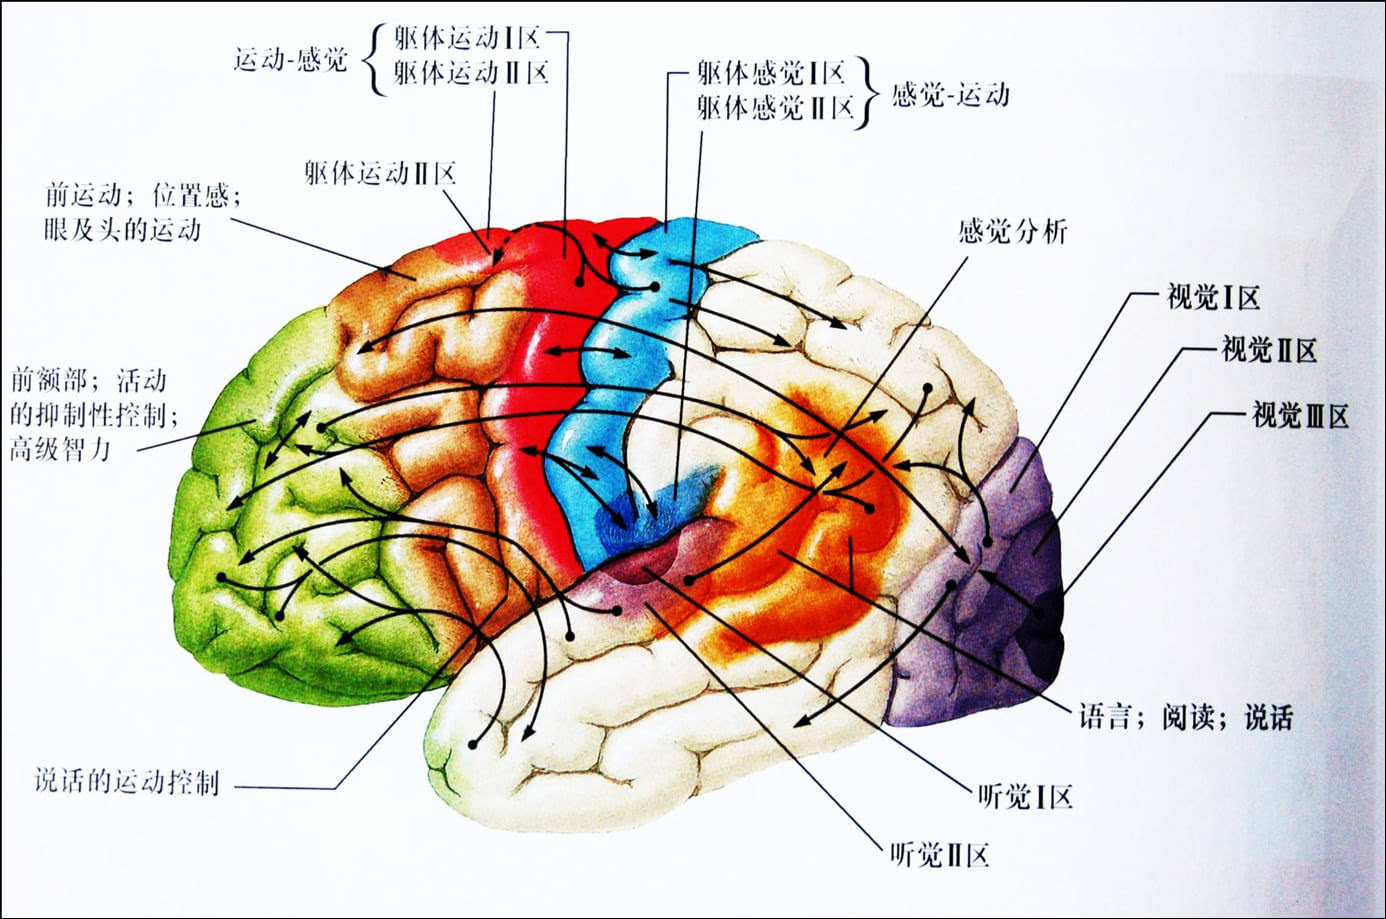 人脑结构图和部位名称图片